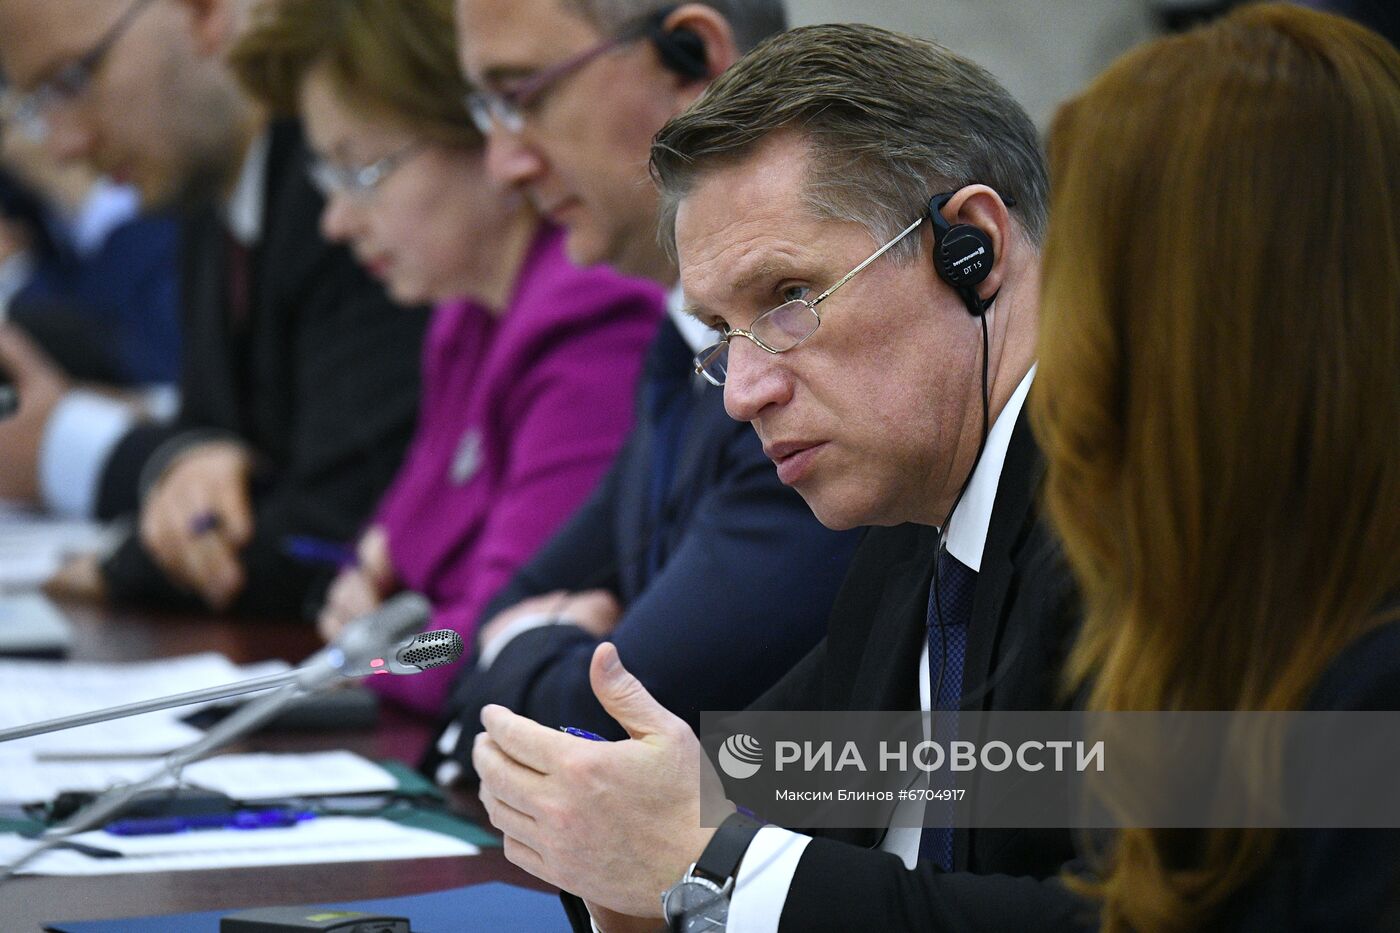 Заседание российско-венгерской межправительственной комиссии по экономическому сотрудничеству